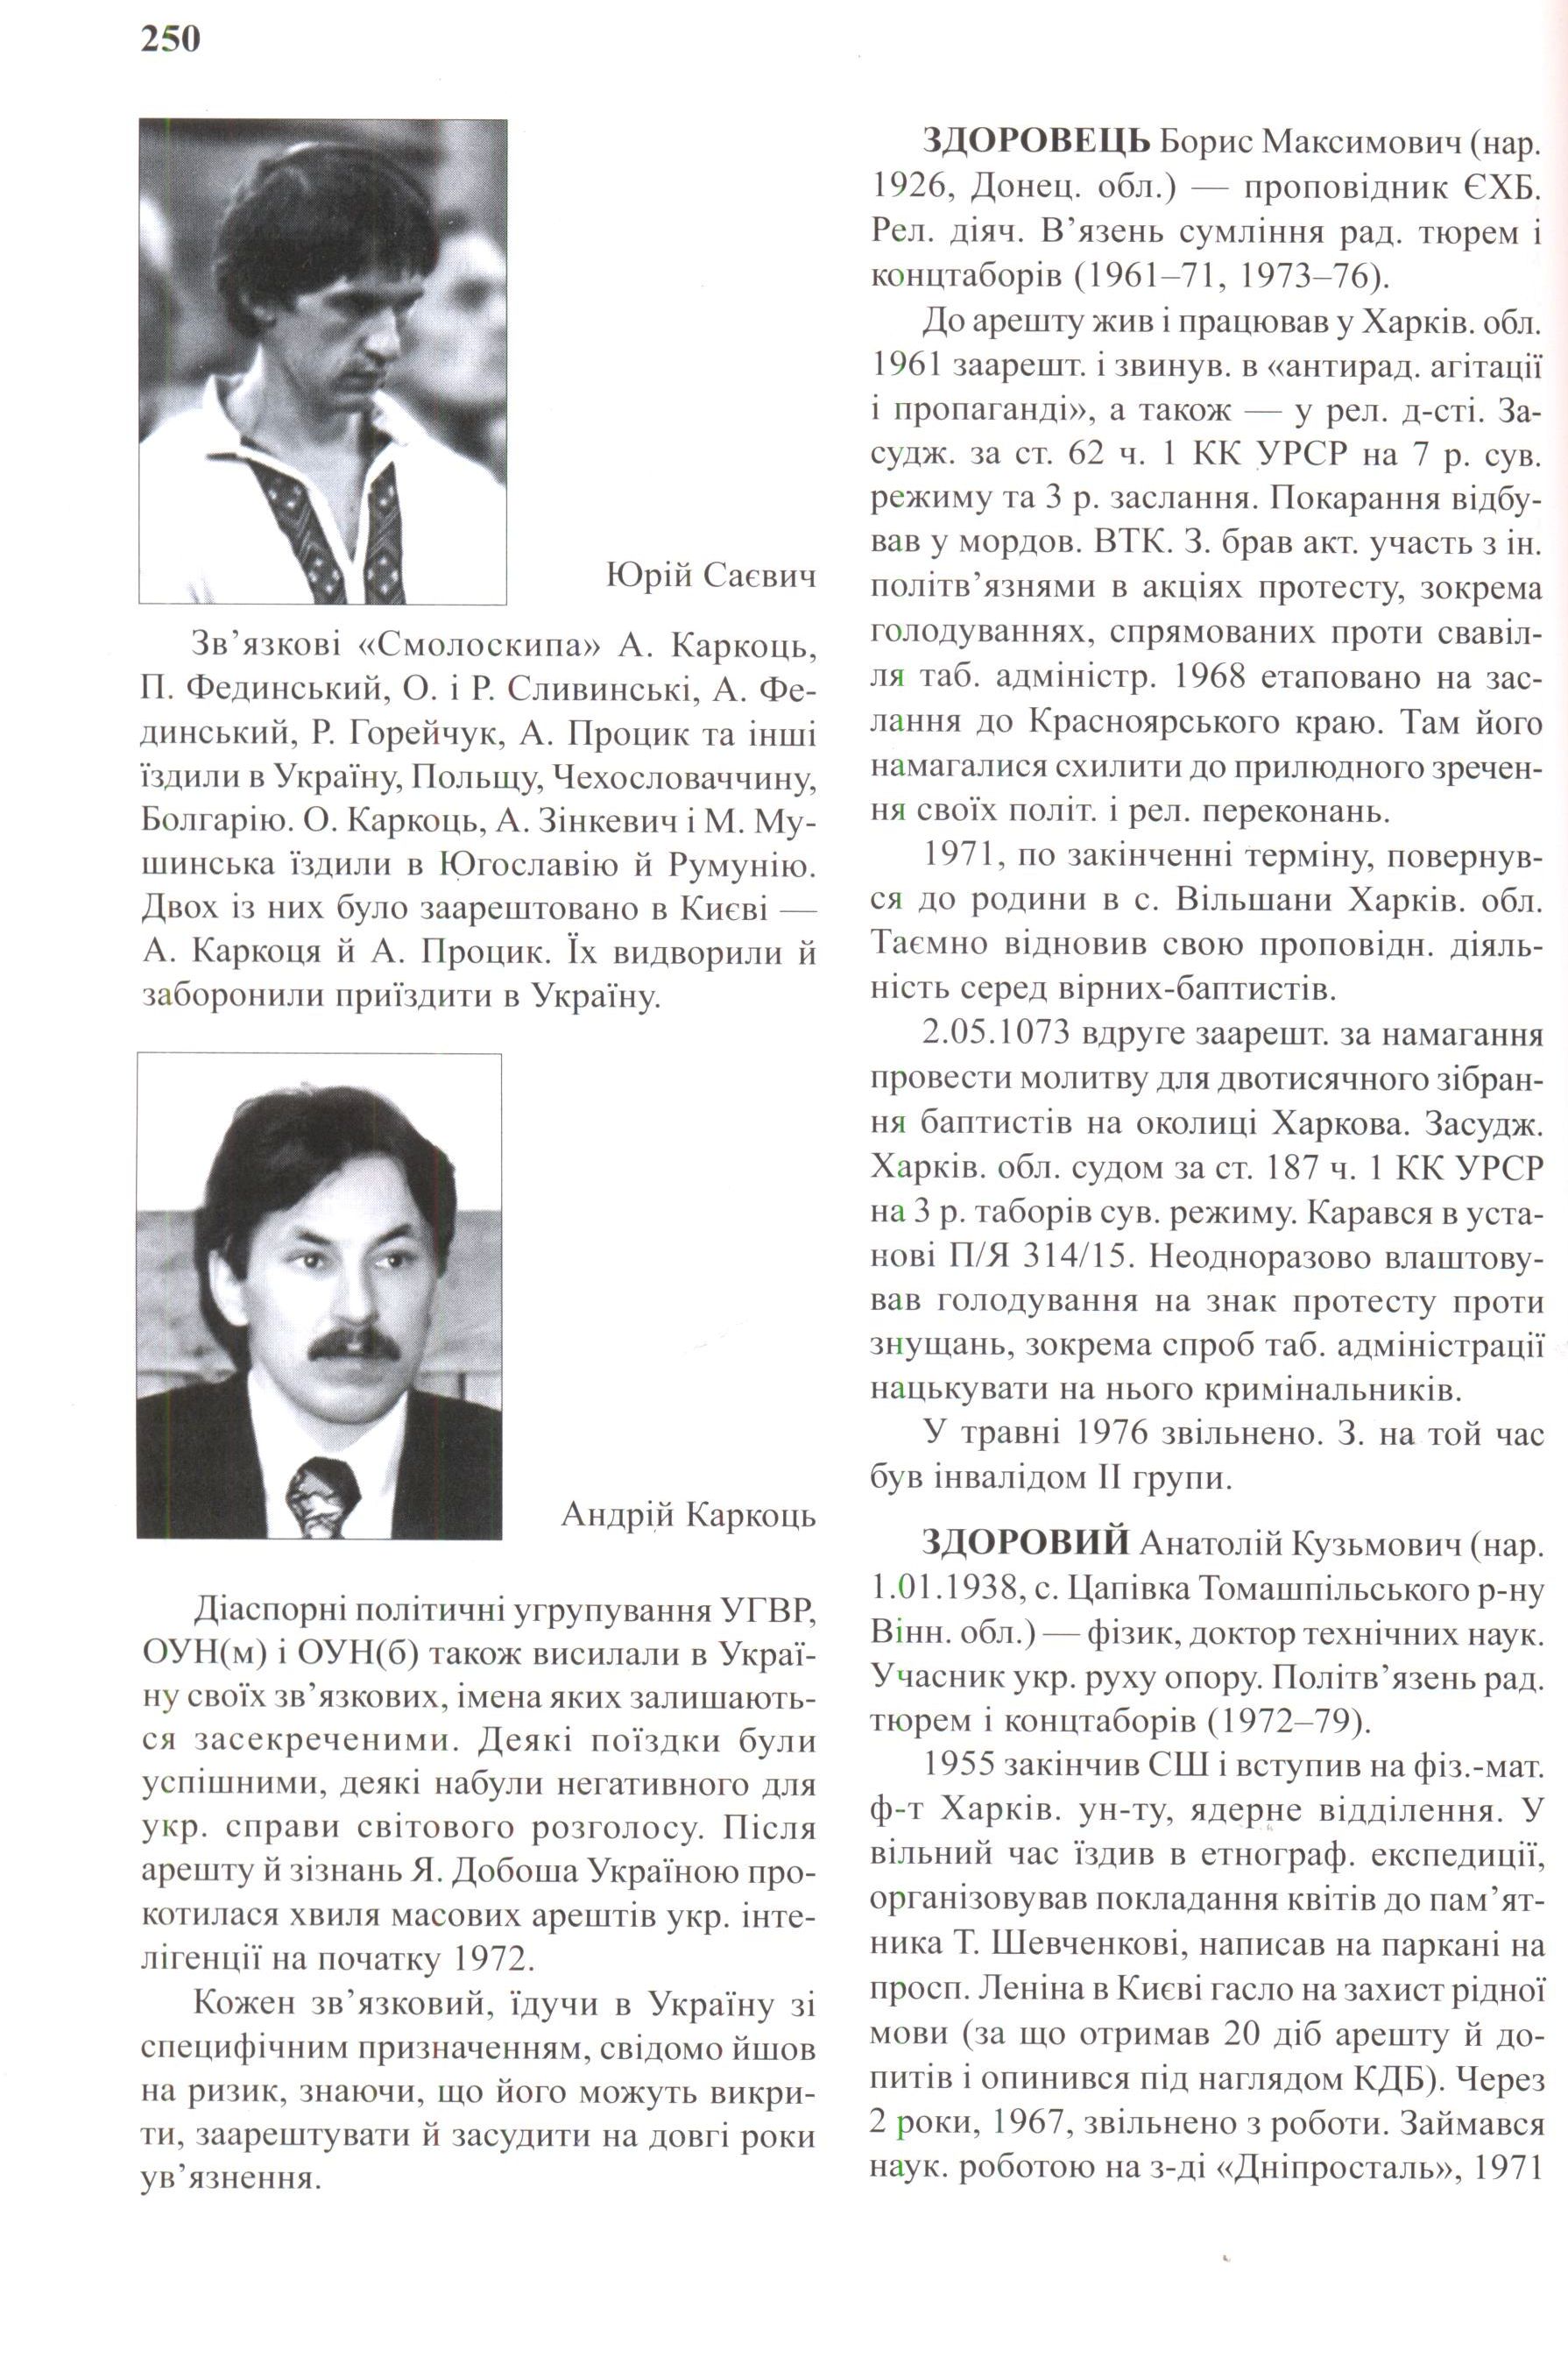 Рух опору в Україні 1960-1990. Енциклопедичний довідник. Фото N3